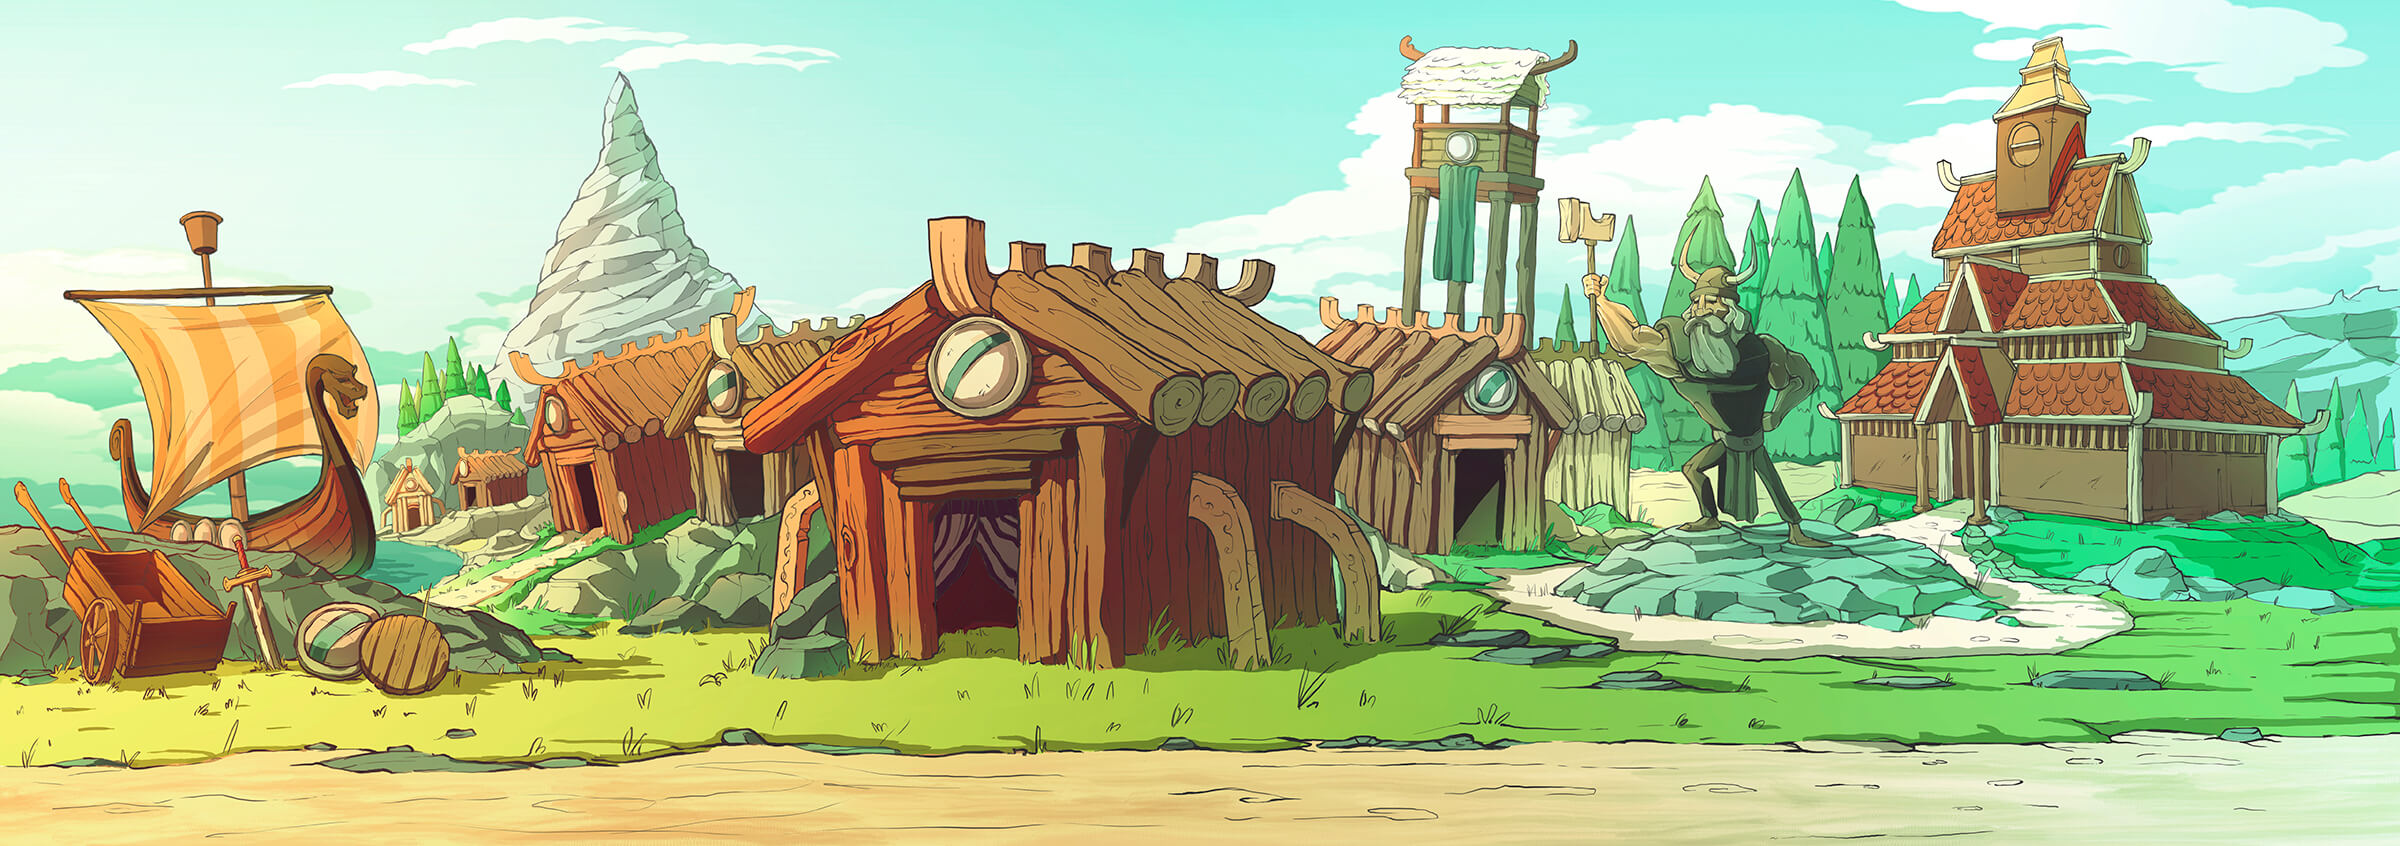 Representación al estilo de dibujos animados de un antiguo pueblo vikingo con cabañas de madera, una lancha y una estatua de un guerrero con un martillo.